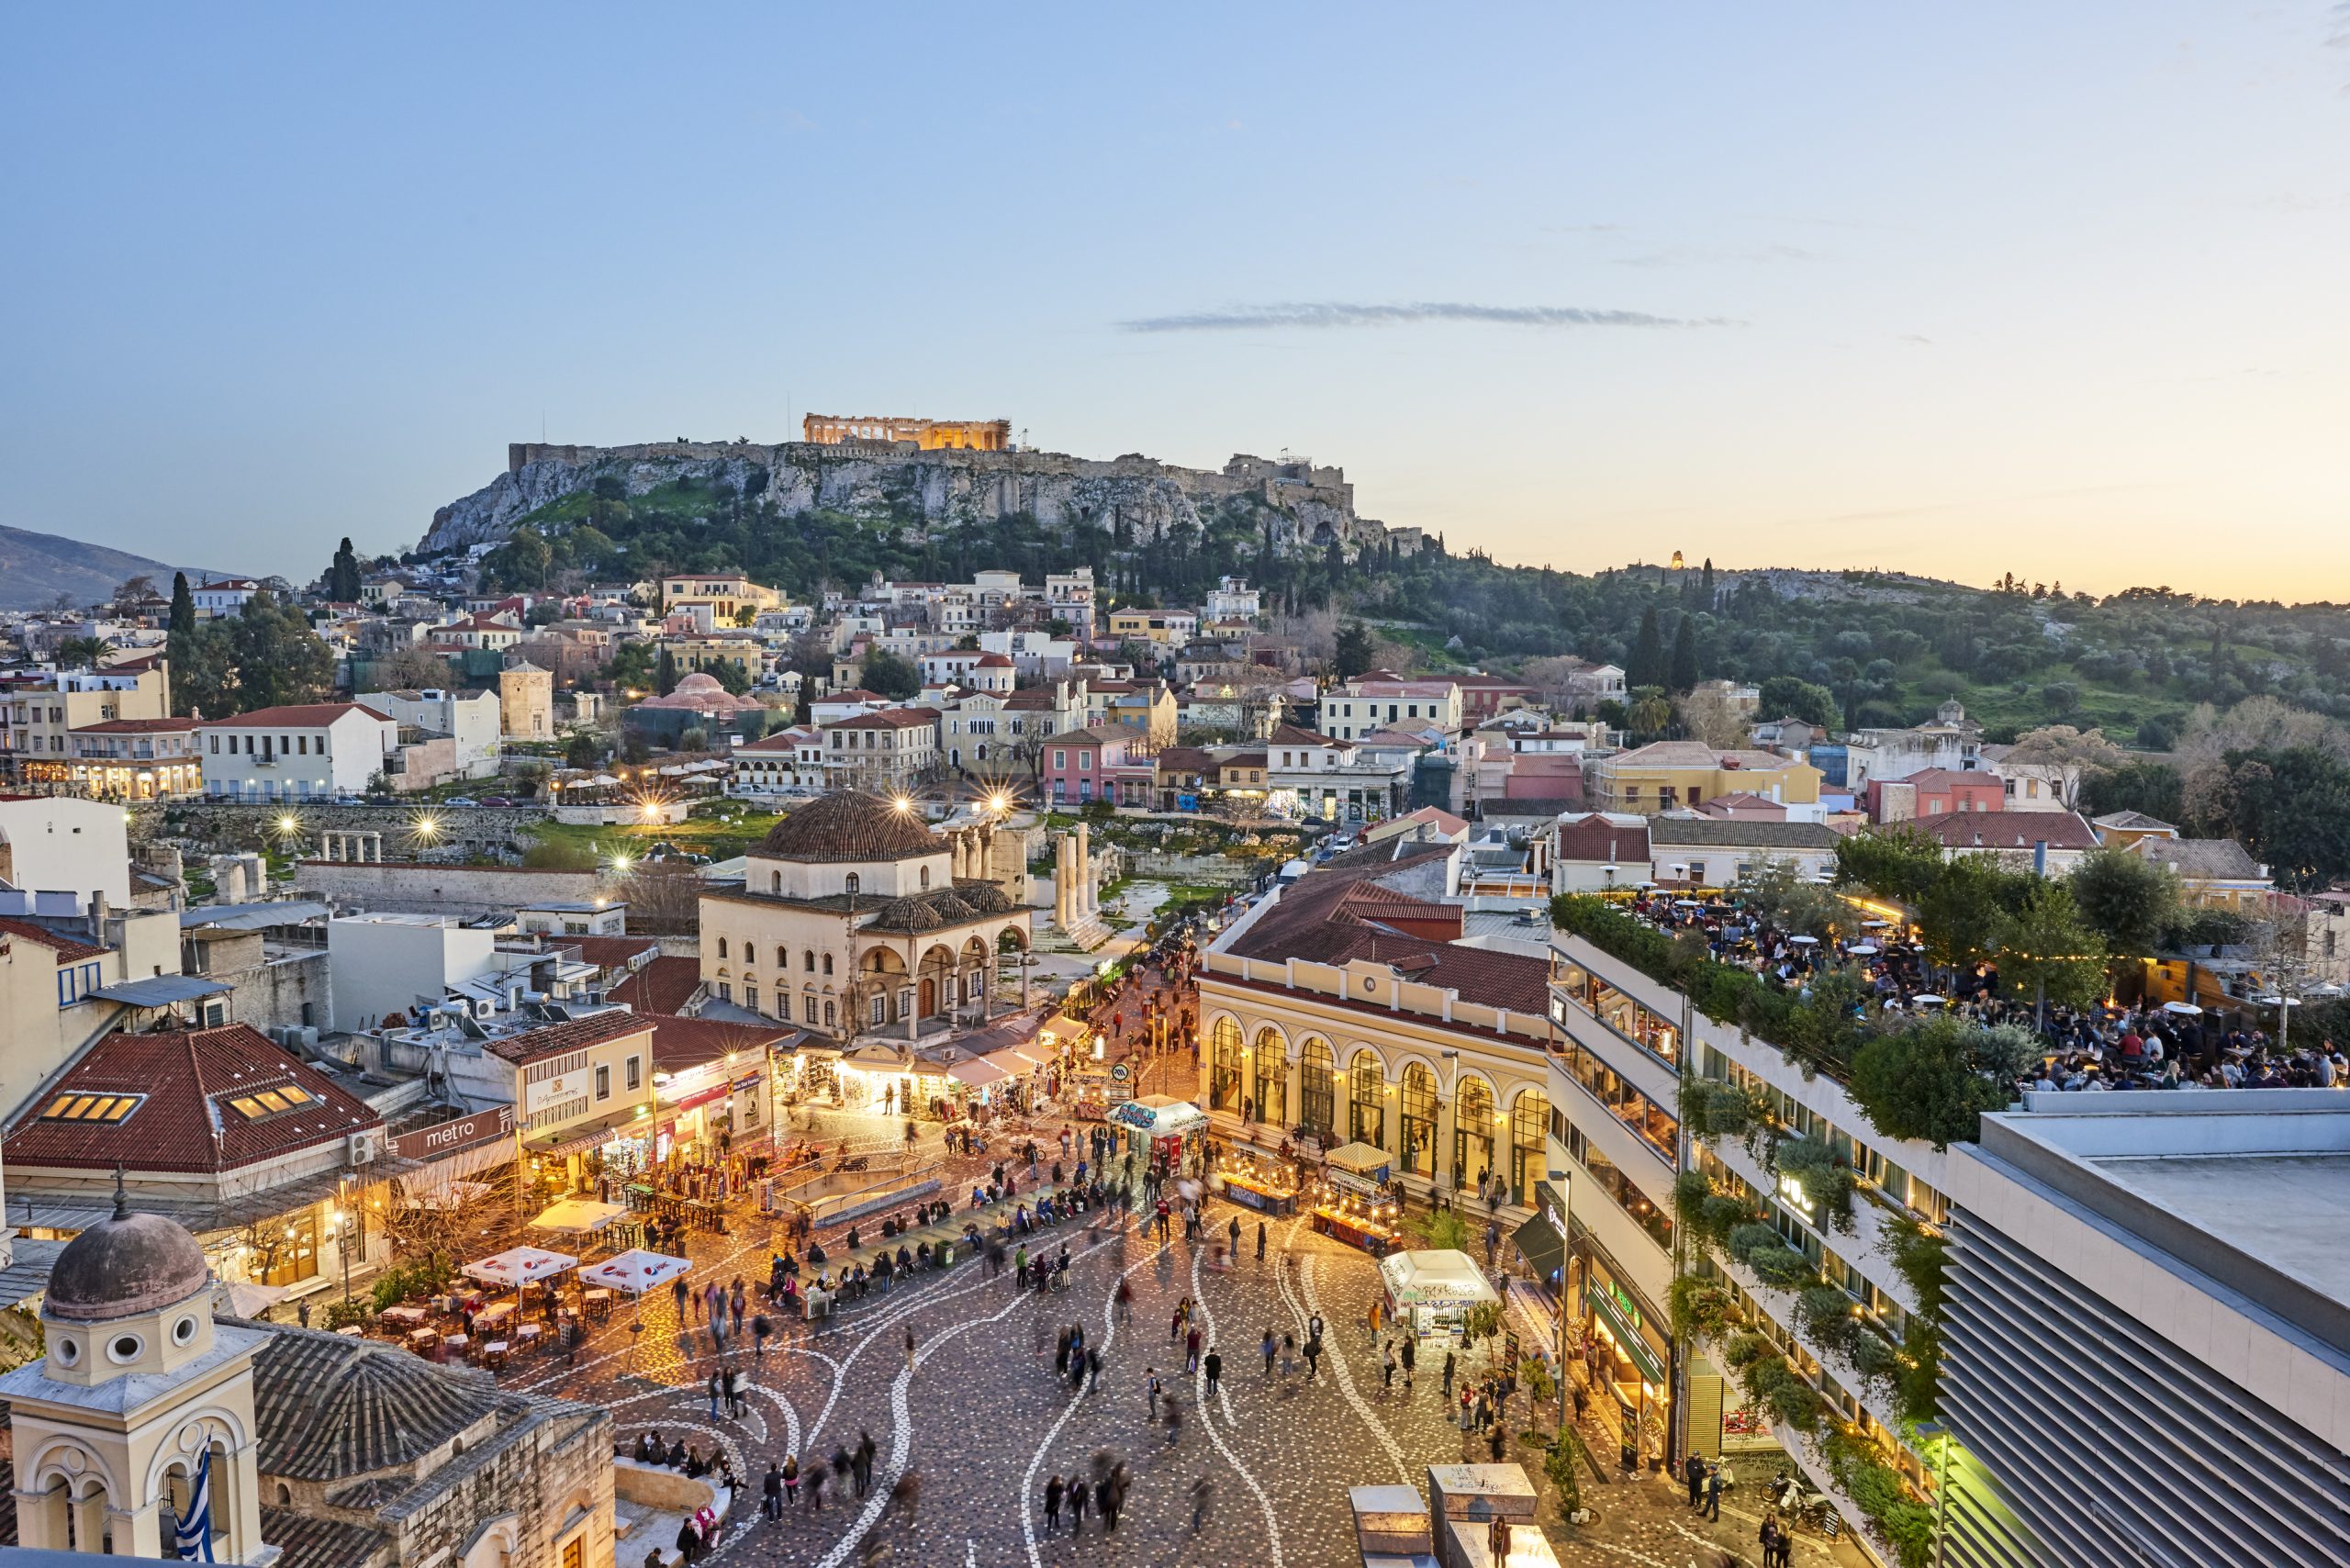 Население греции афины. Афины столица. Афины центр города. Греция столица Афины город. Столица Греции Афины фото.